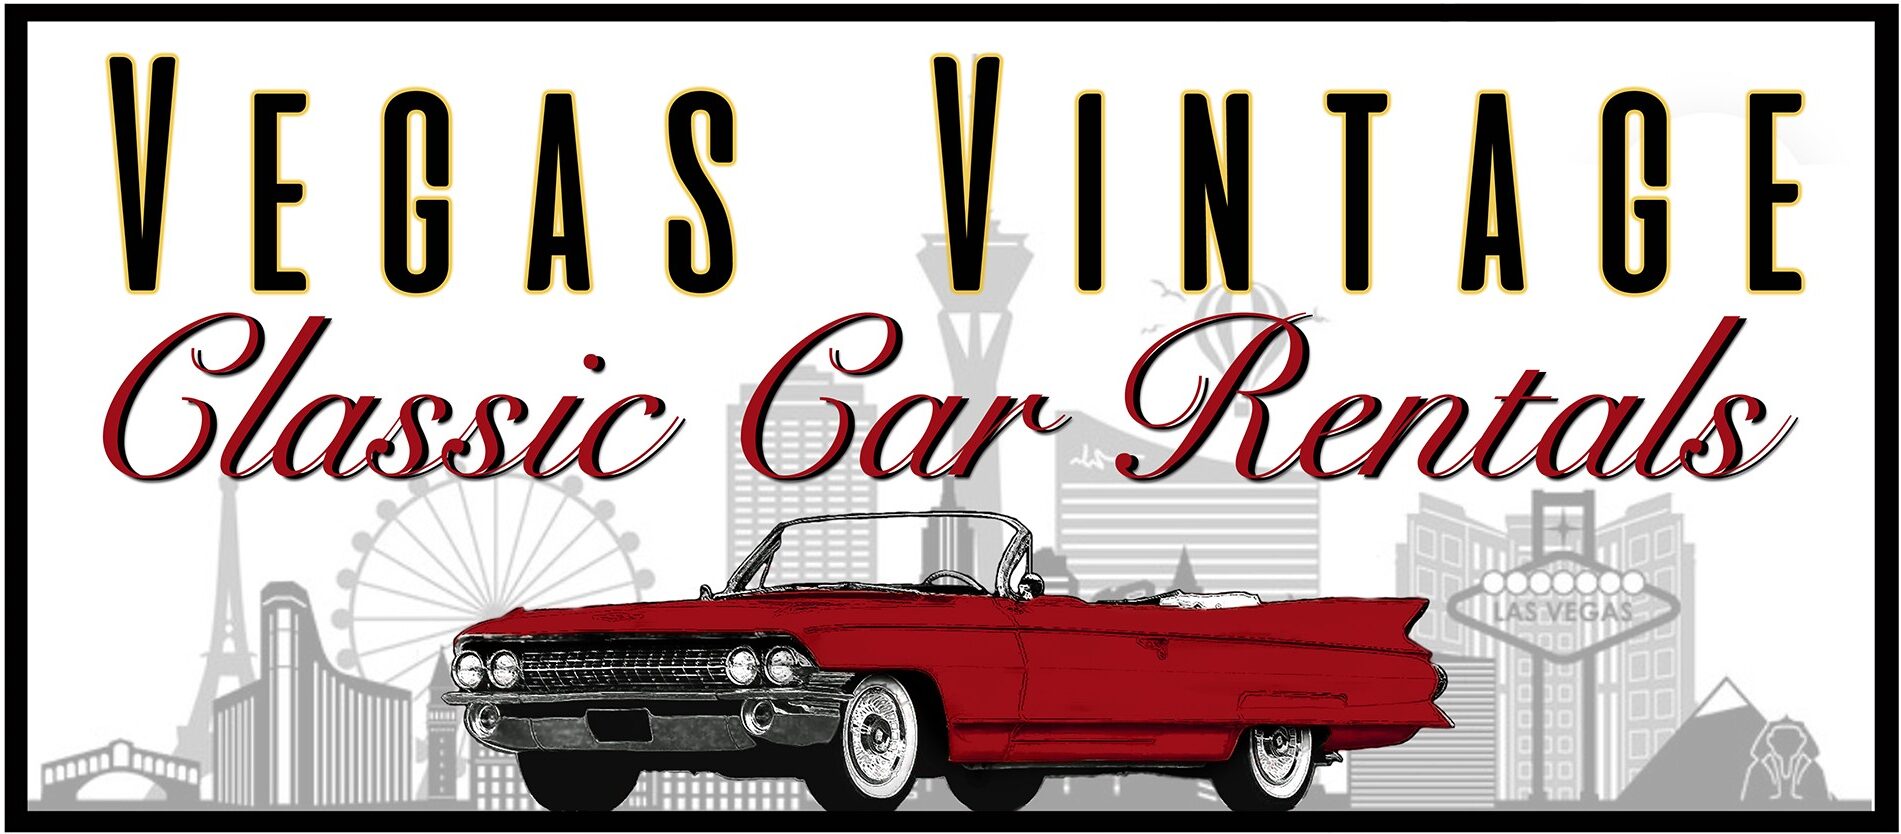 ortodoks trappe leksikon Las Vegas Classic Car Rentals ‣ Vegas Vintage Classic Rental Cars